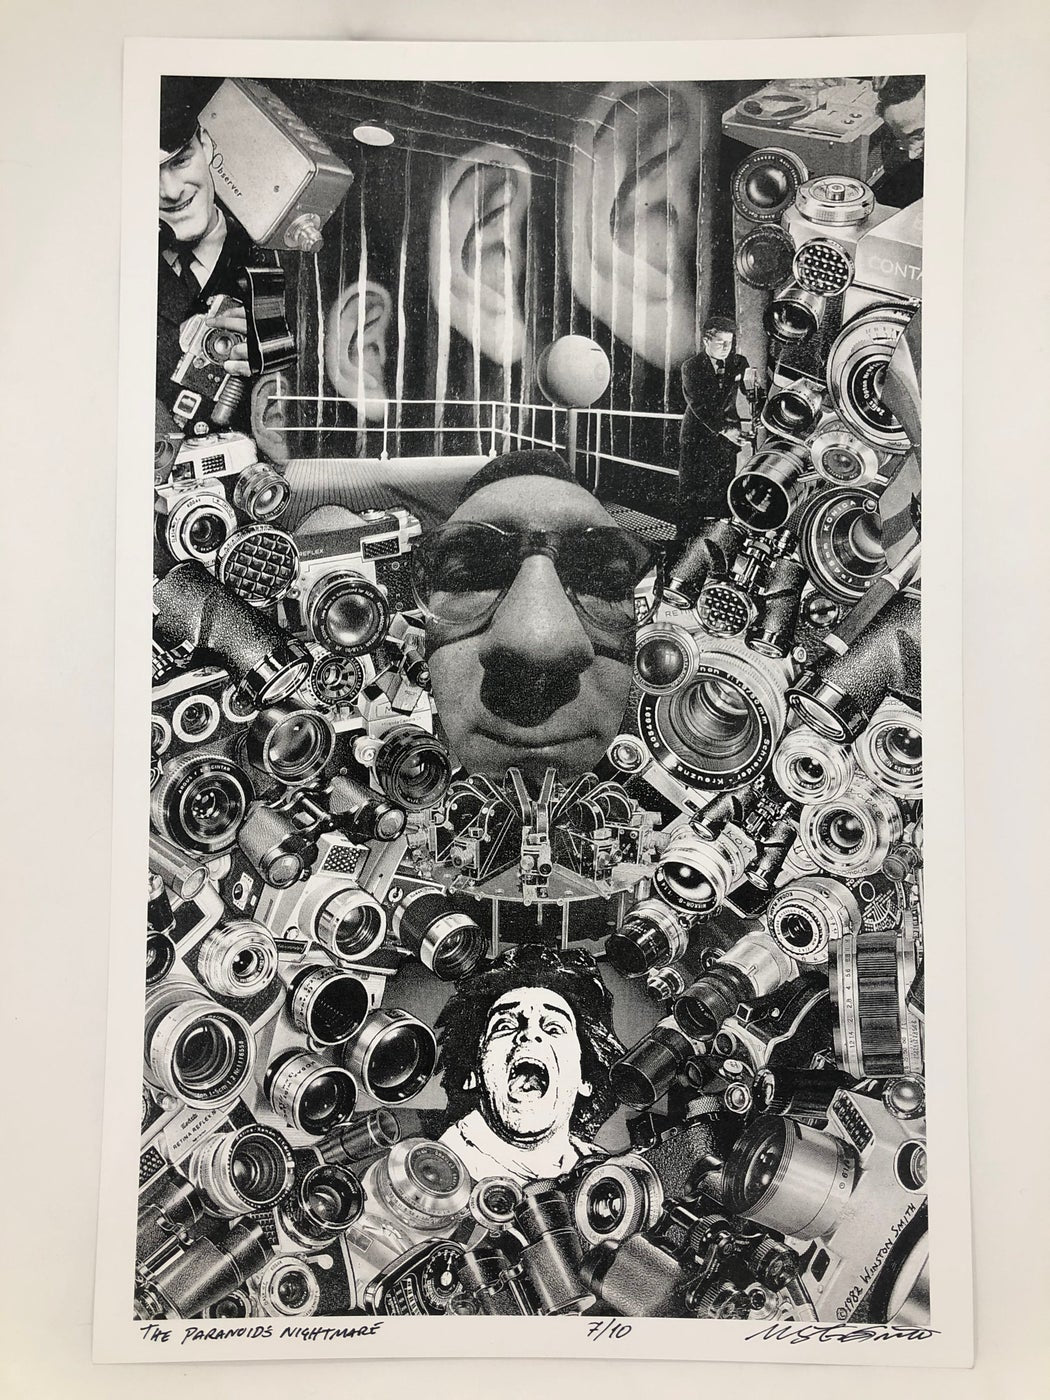 Winston Smith "The Paranoid's Nightmare" Print (1983)